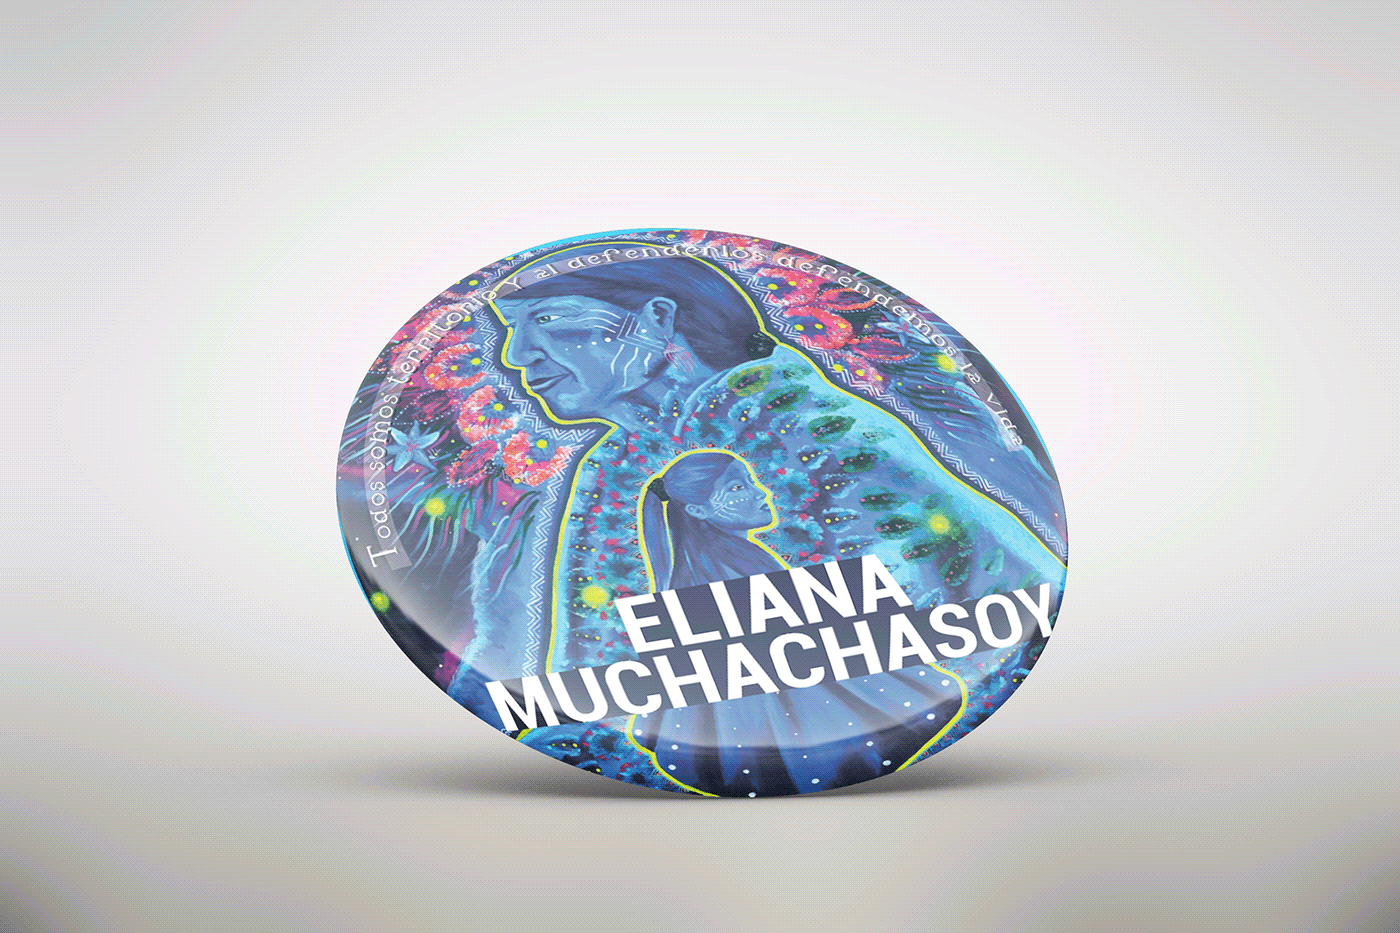 Botón Eliana Muchachasoy
